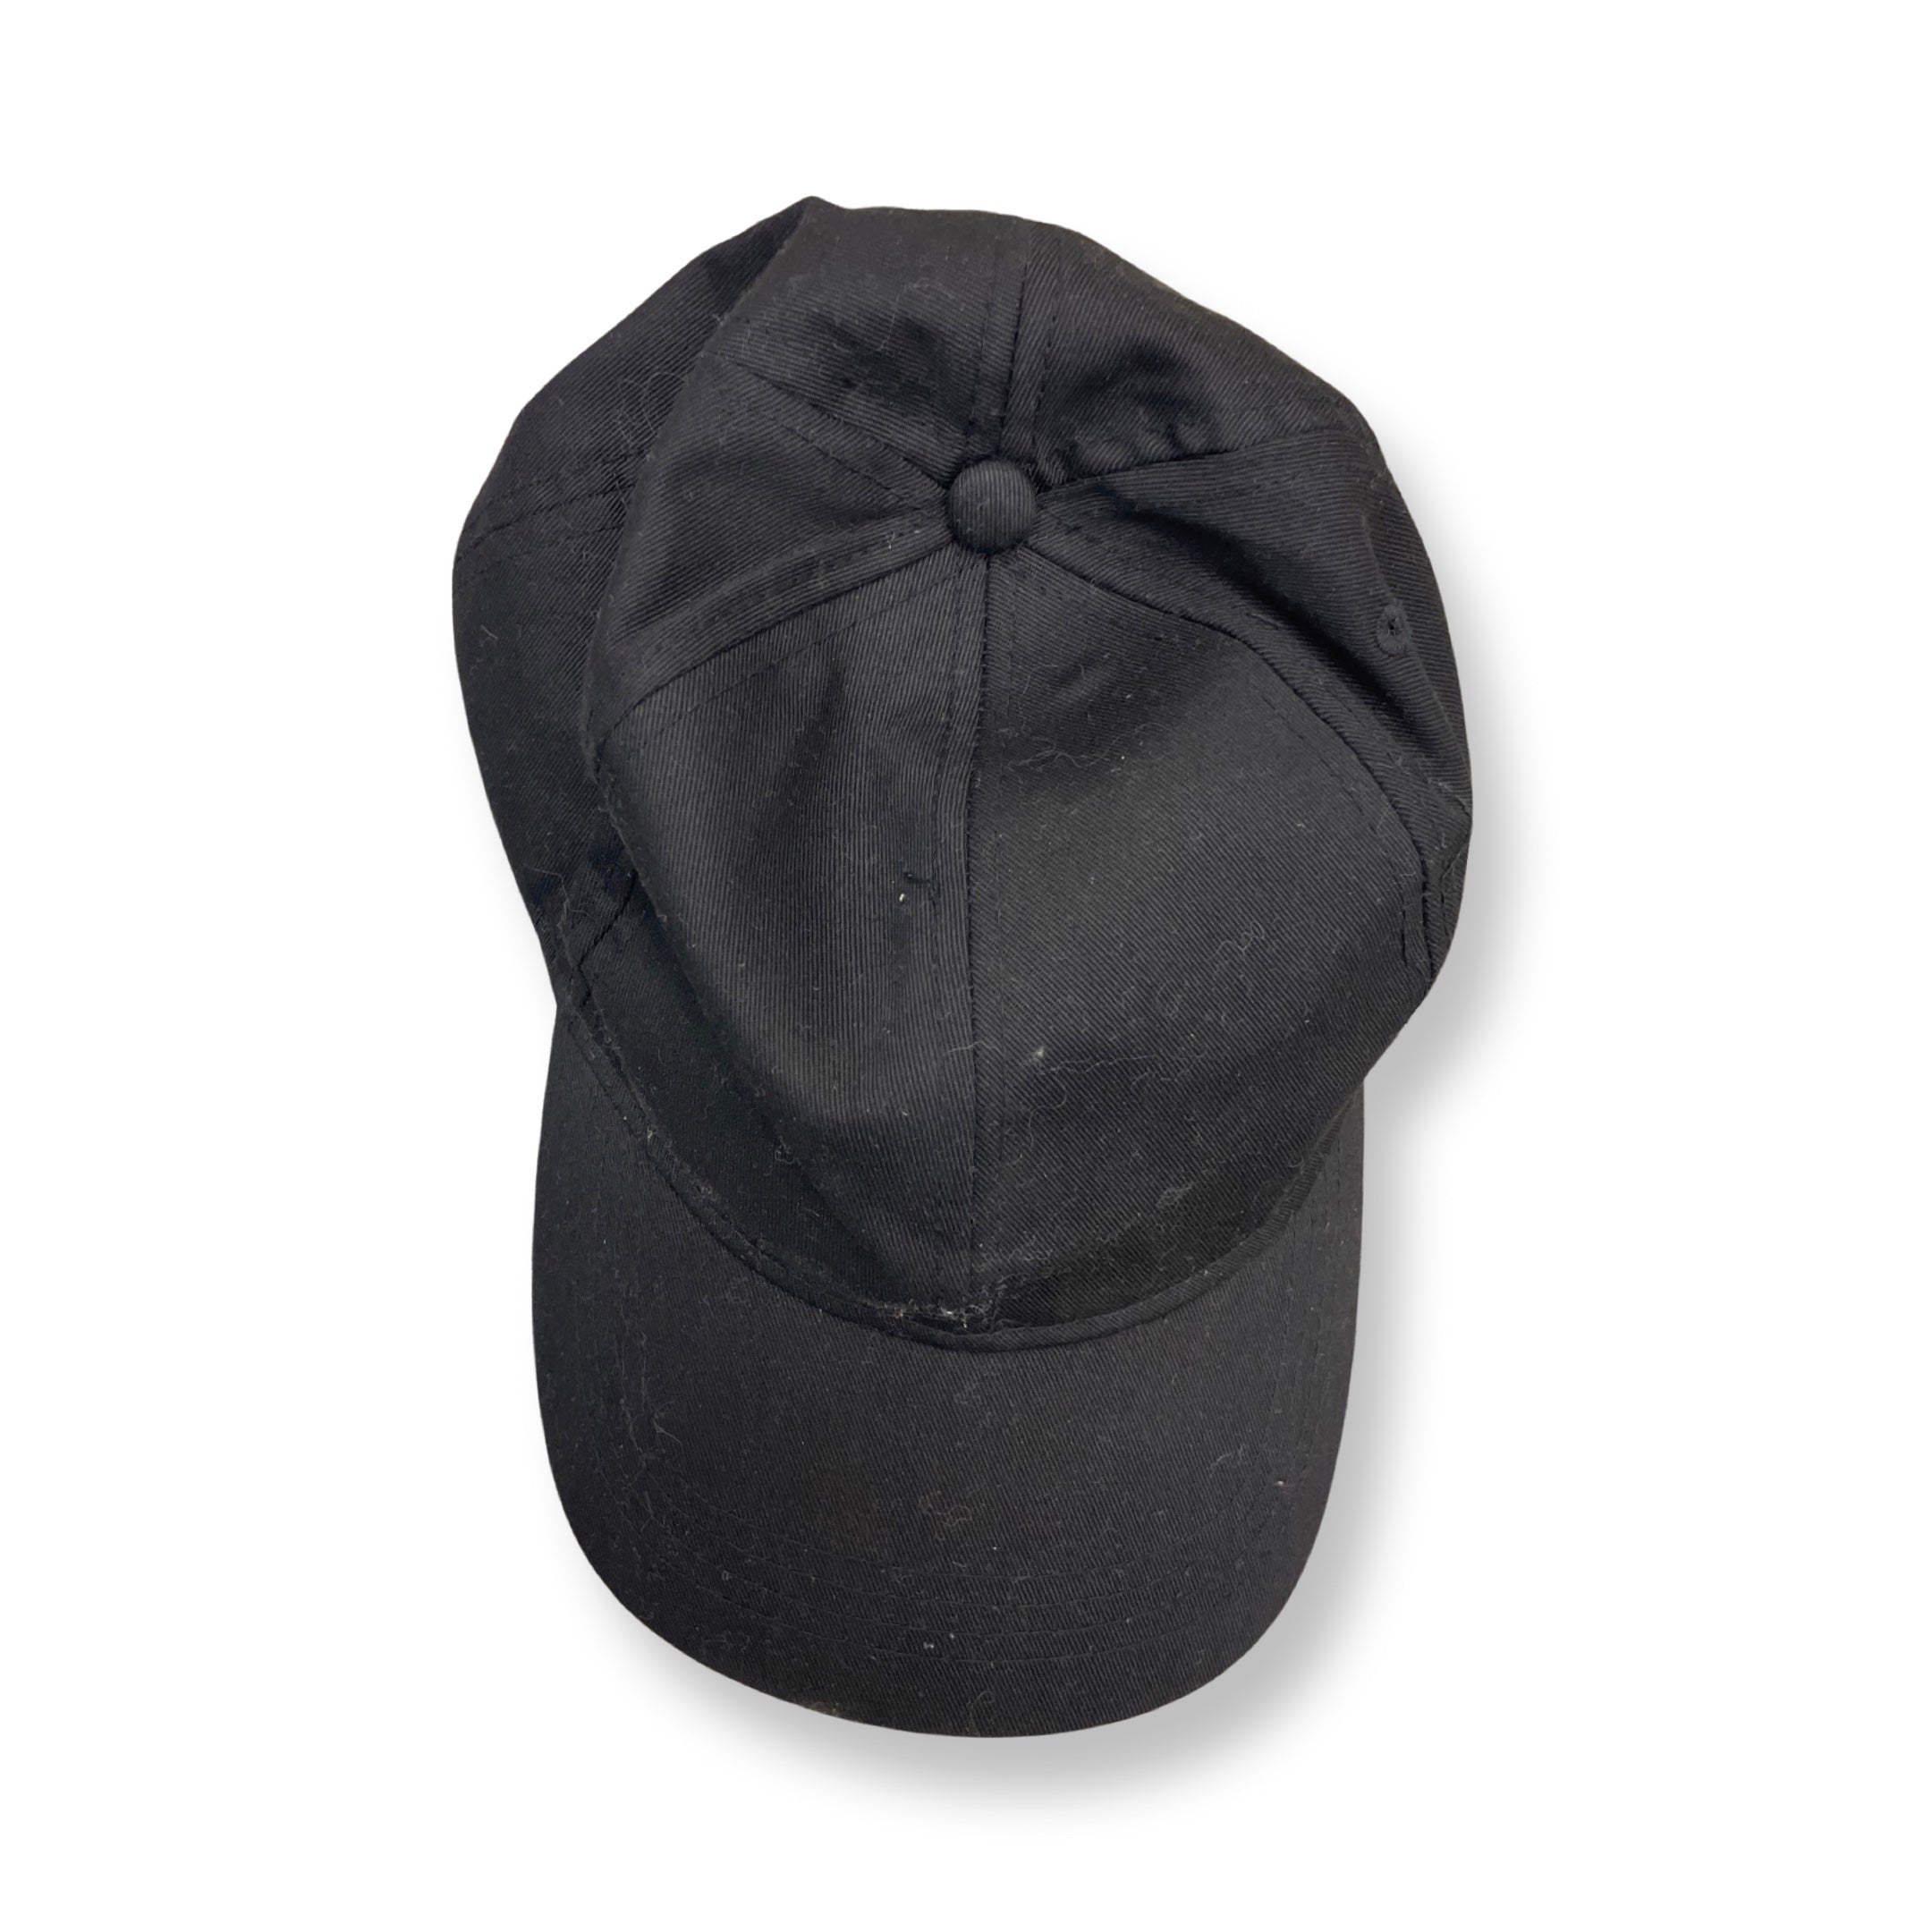 Rubynee Vintage y2k plain suede black baseball cap